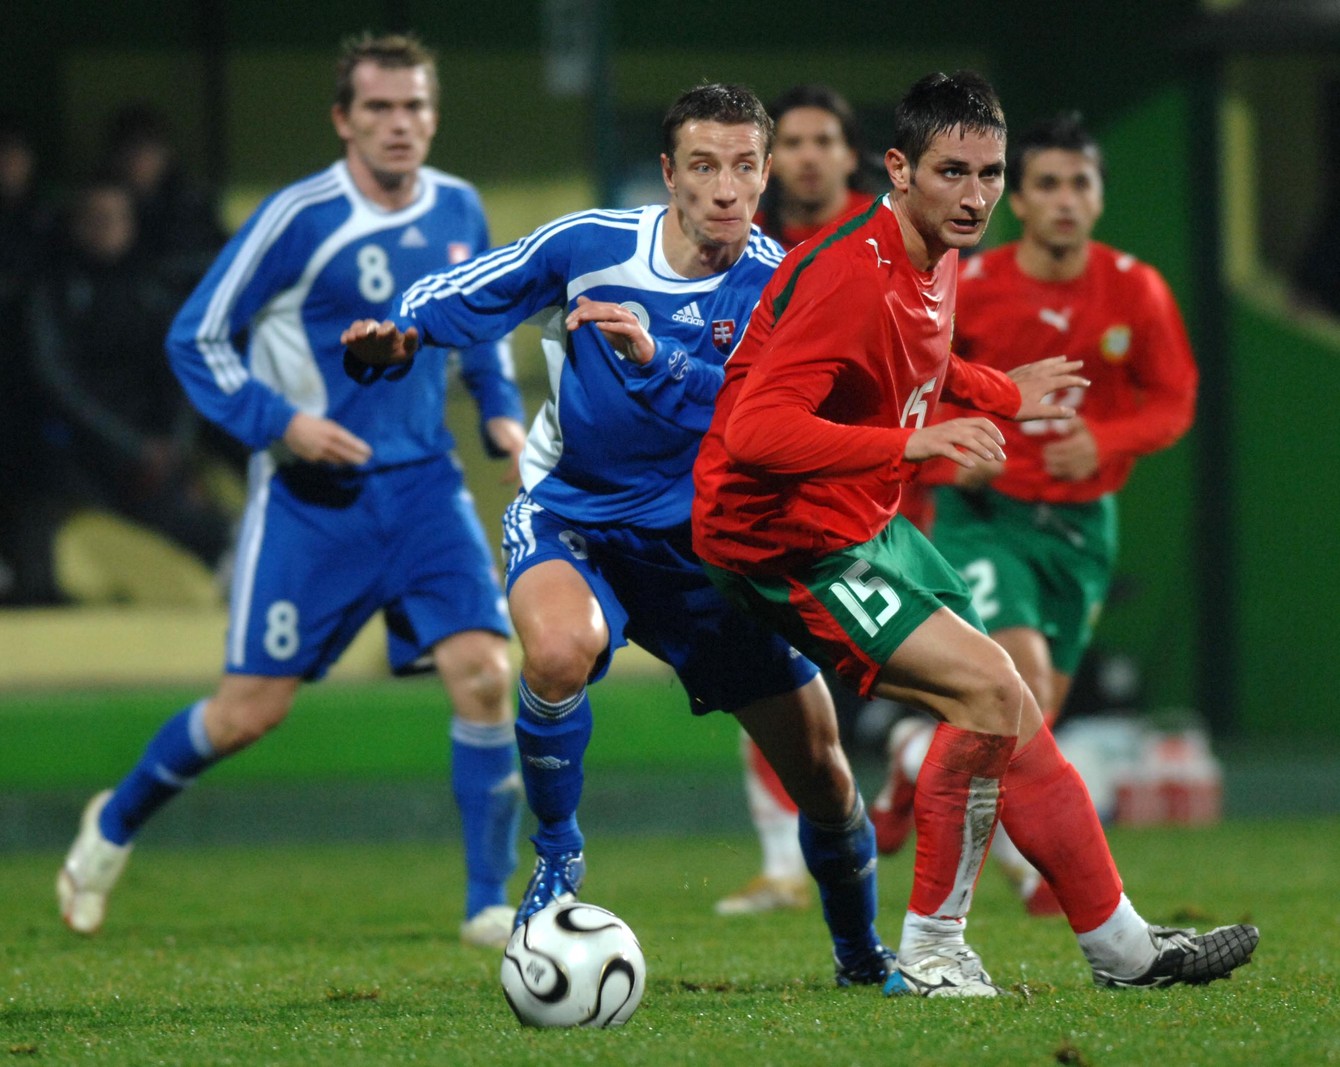 Zľava Marek Mintál a Aleksandar Tunčev v prípravnom zápase Slovensko - Bulharsko 3:1 (15.11.2006, Žilina).